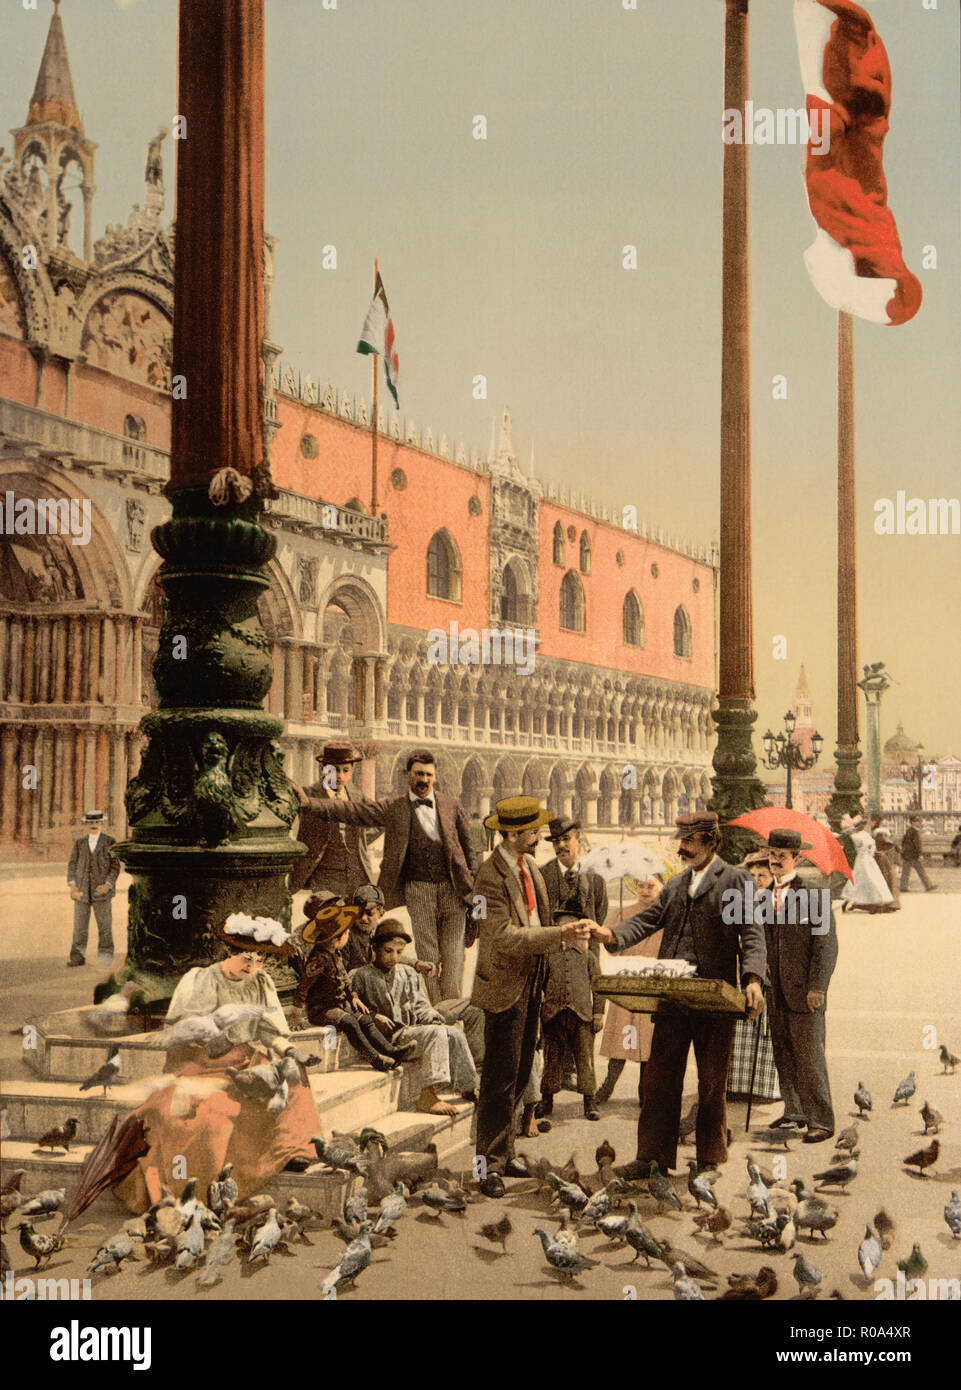 Du Palais des Doges et des colonnes de Saint-Marc, Venise, Italie, impression Photochrome, Detroit Publishing Company, 1900 Banque D'Images